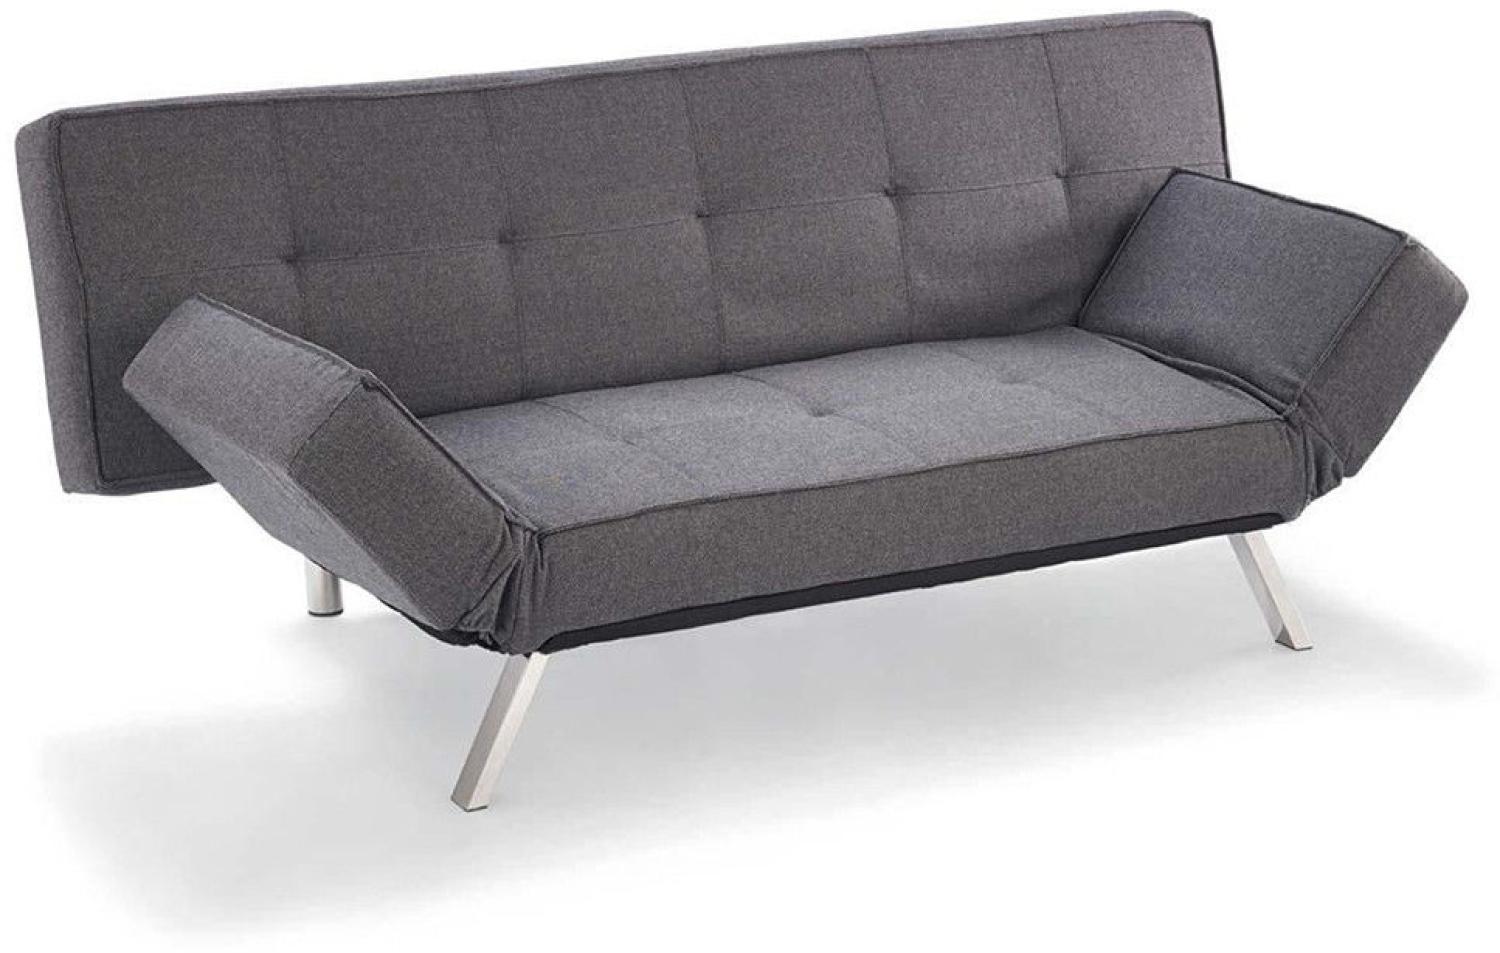 Schlafsofa New York Schlaffunktion Sofa Couch Schlafcouch Couchgarnitur Grau Bild 1